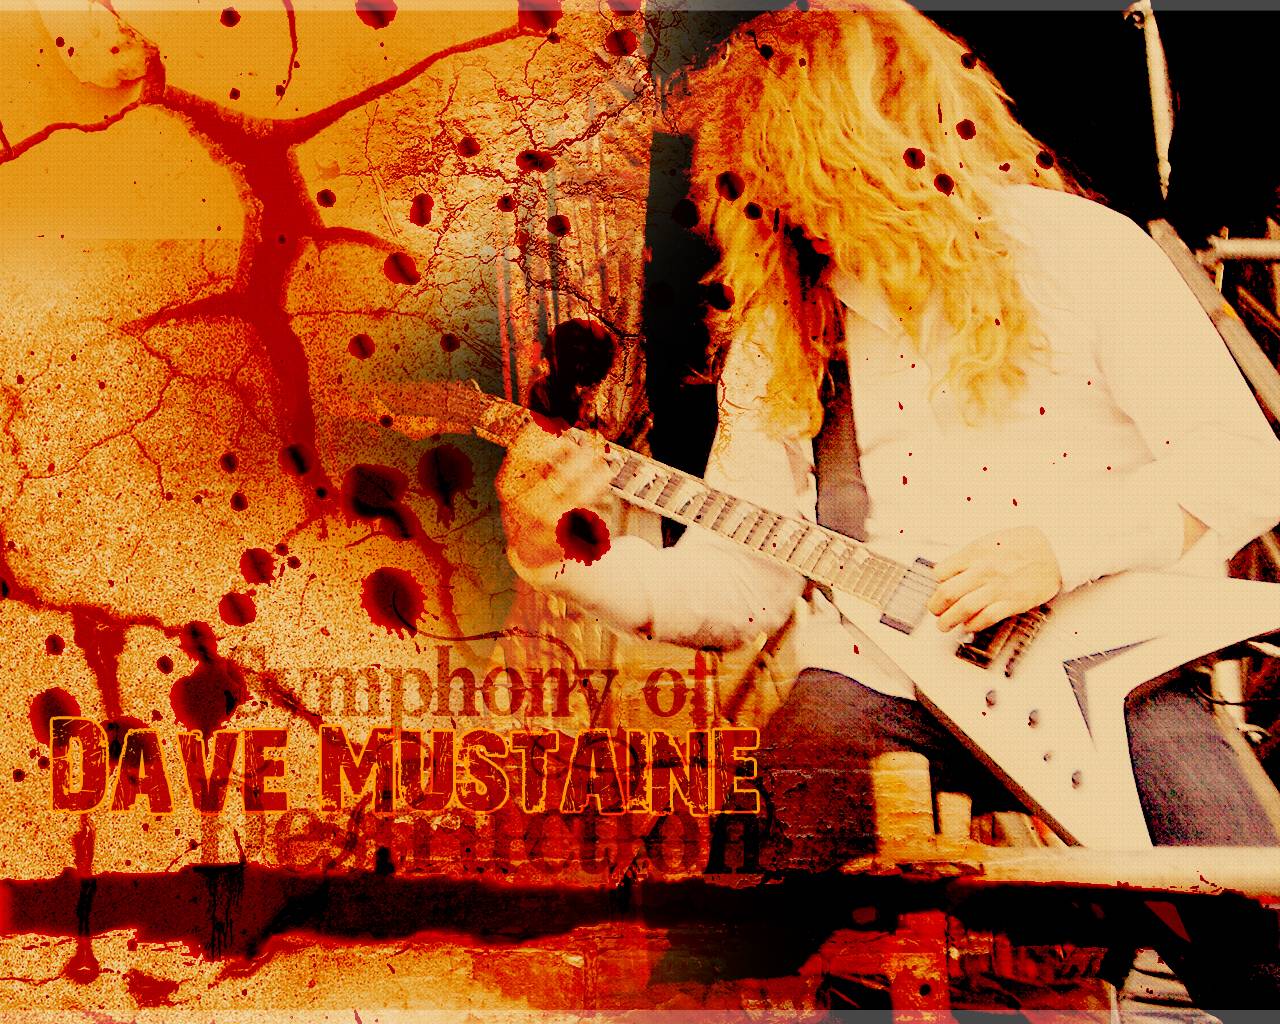 Dave Mustaine Computer Wallpaper, Desktop Background 1280x1024